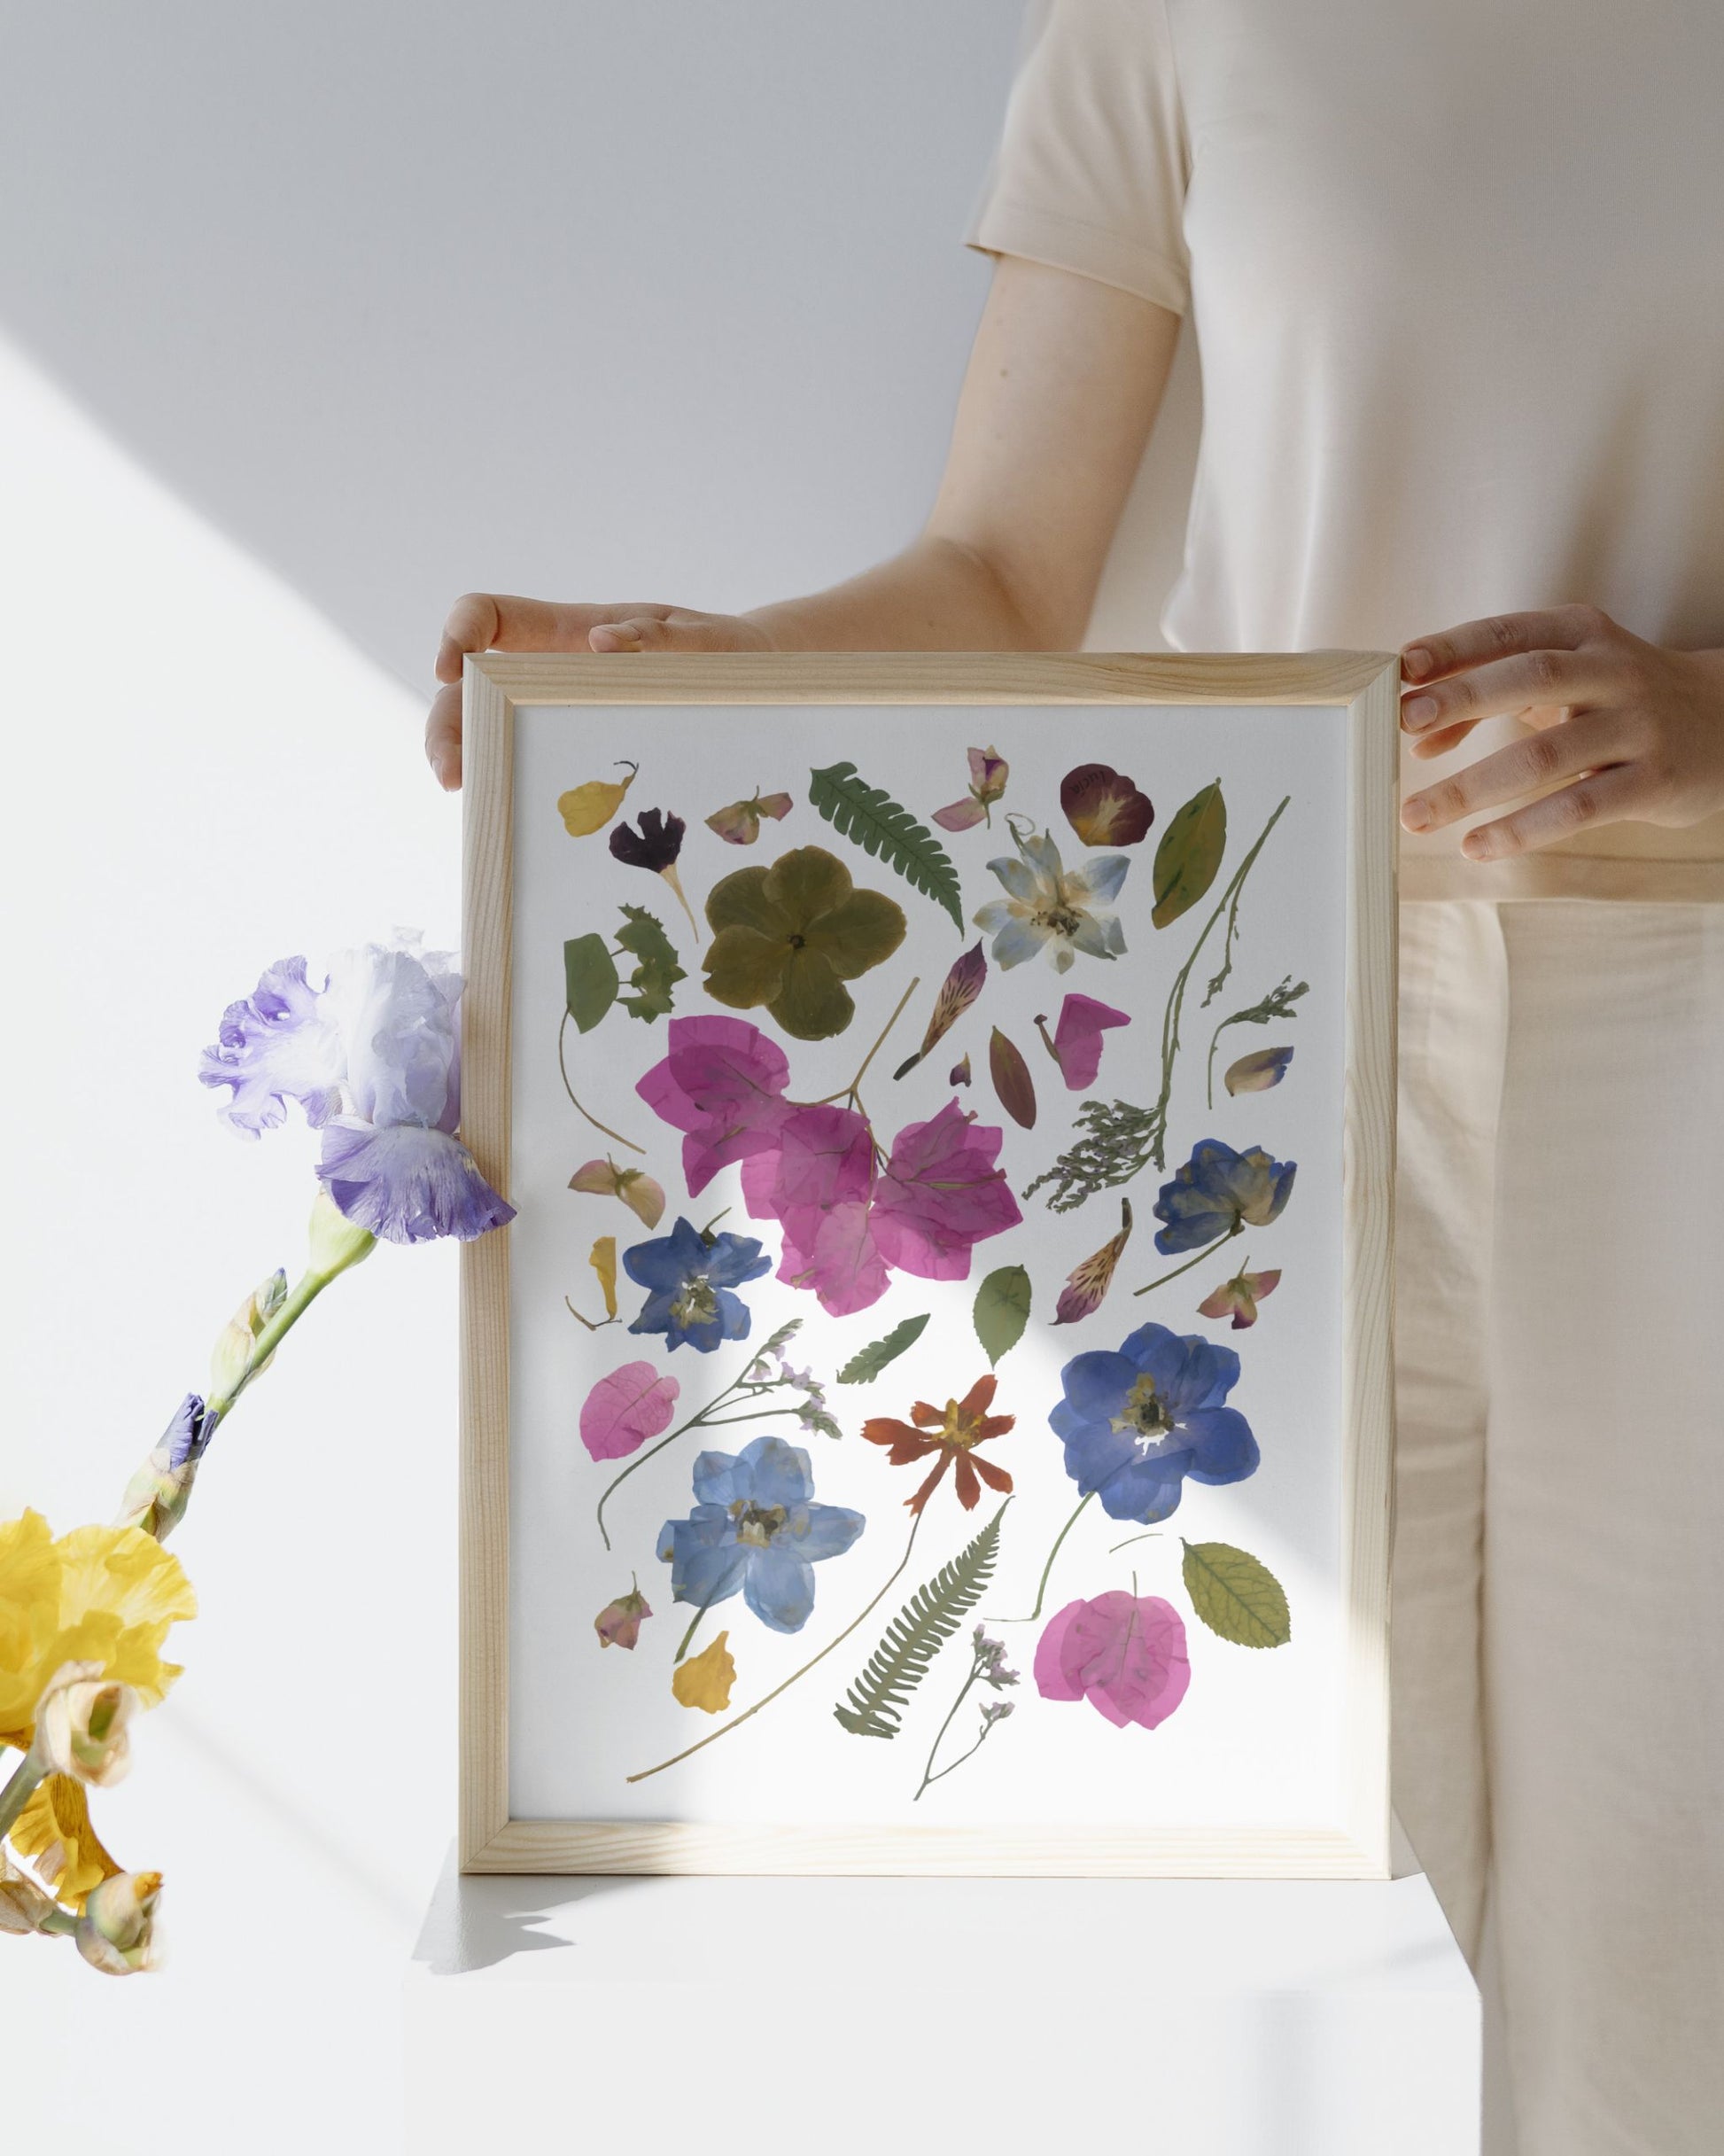 Print con marco de collage de flores colombianas prensadas autografiadas por la artista, con flores de todos los colores.